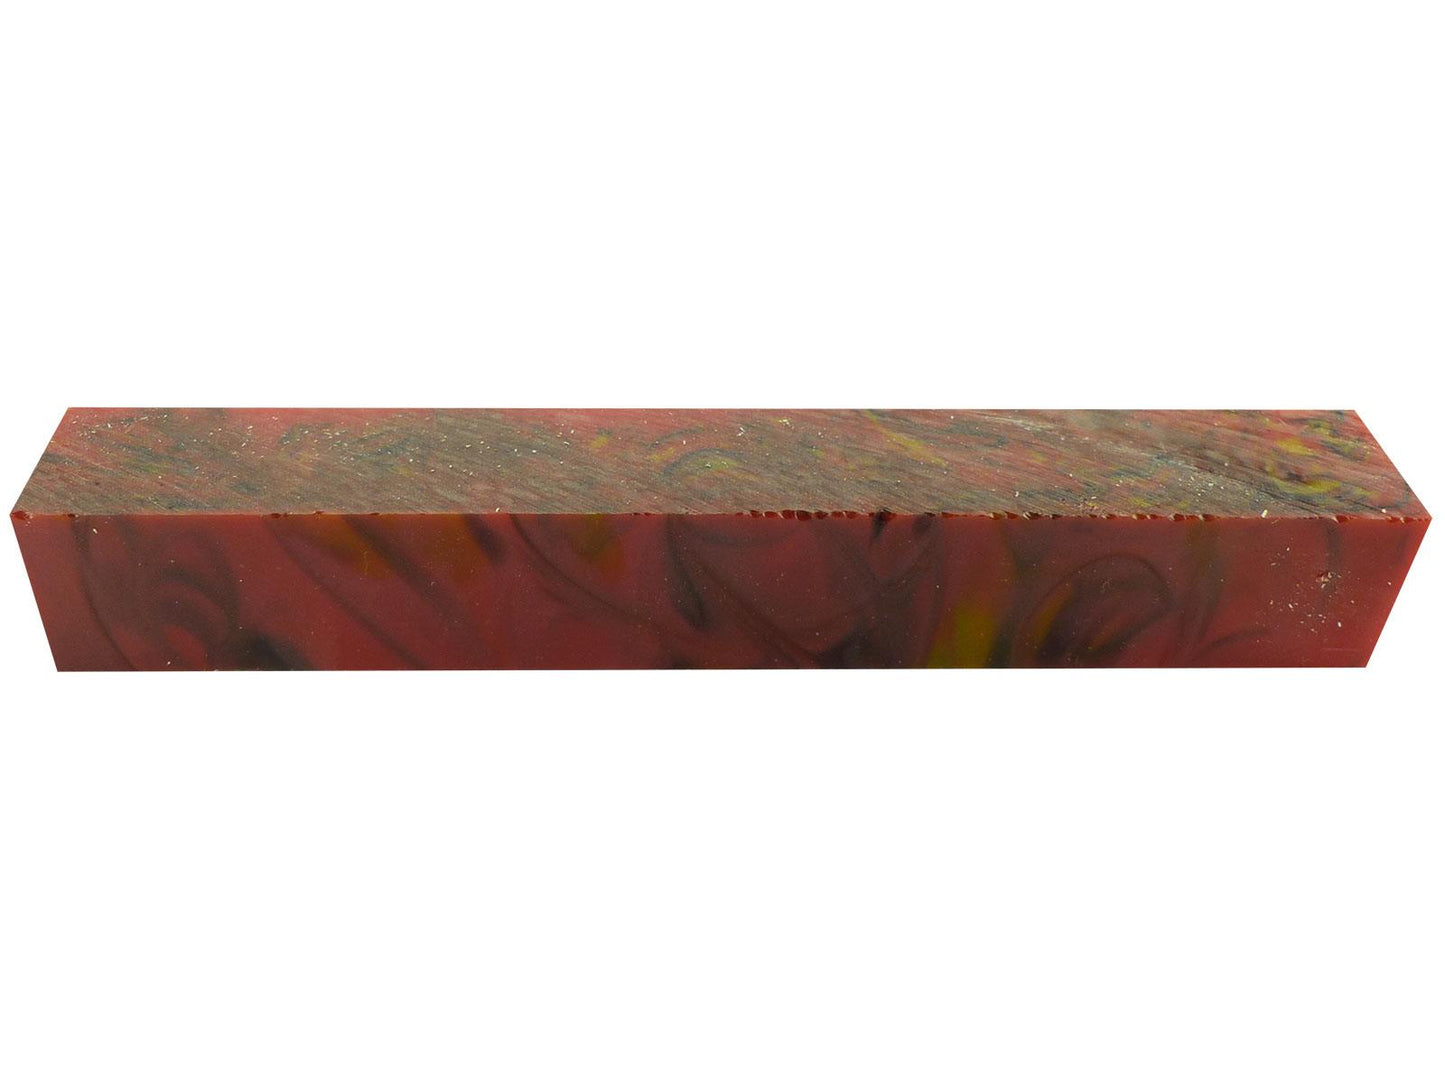 Turners' Mill Light Red California Kirinite Acrylic Pen Blank - 150x20x20mm (5.9x0.79x0.79"), 6x3/4x3/4"